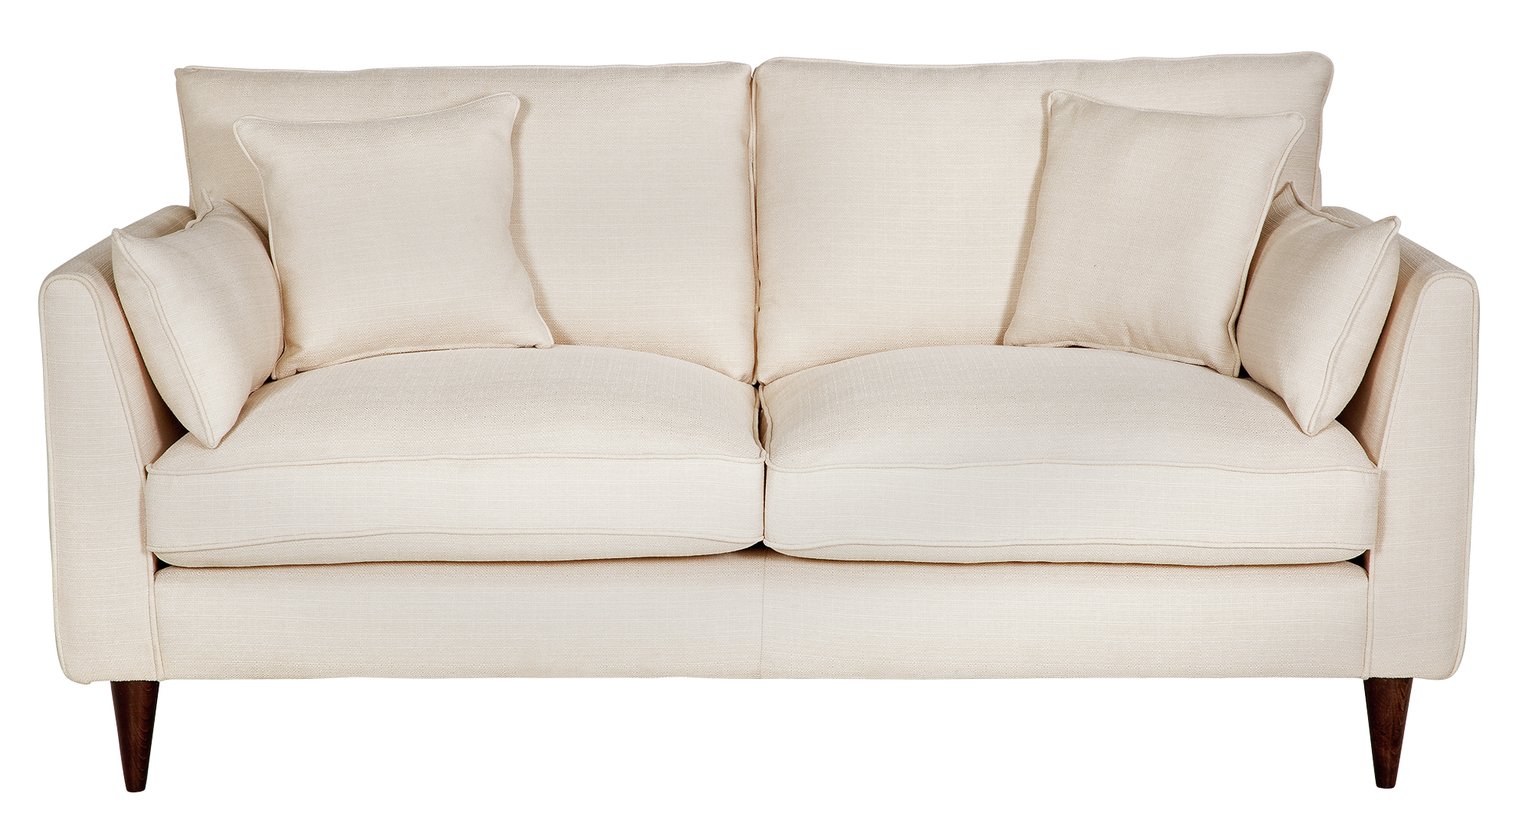 Argos Home Hector 2 Seater Fabric Sofa - Natural Linen